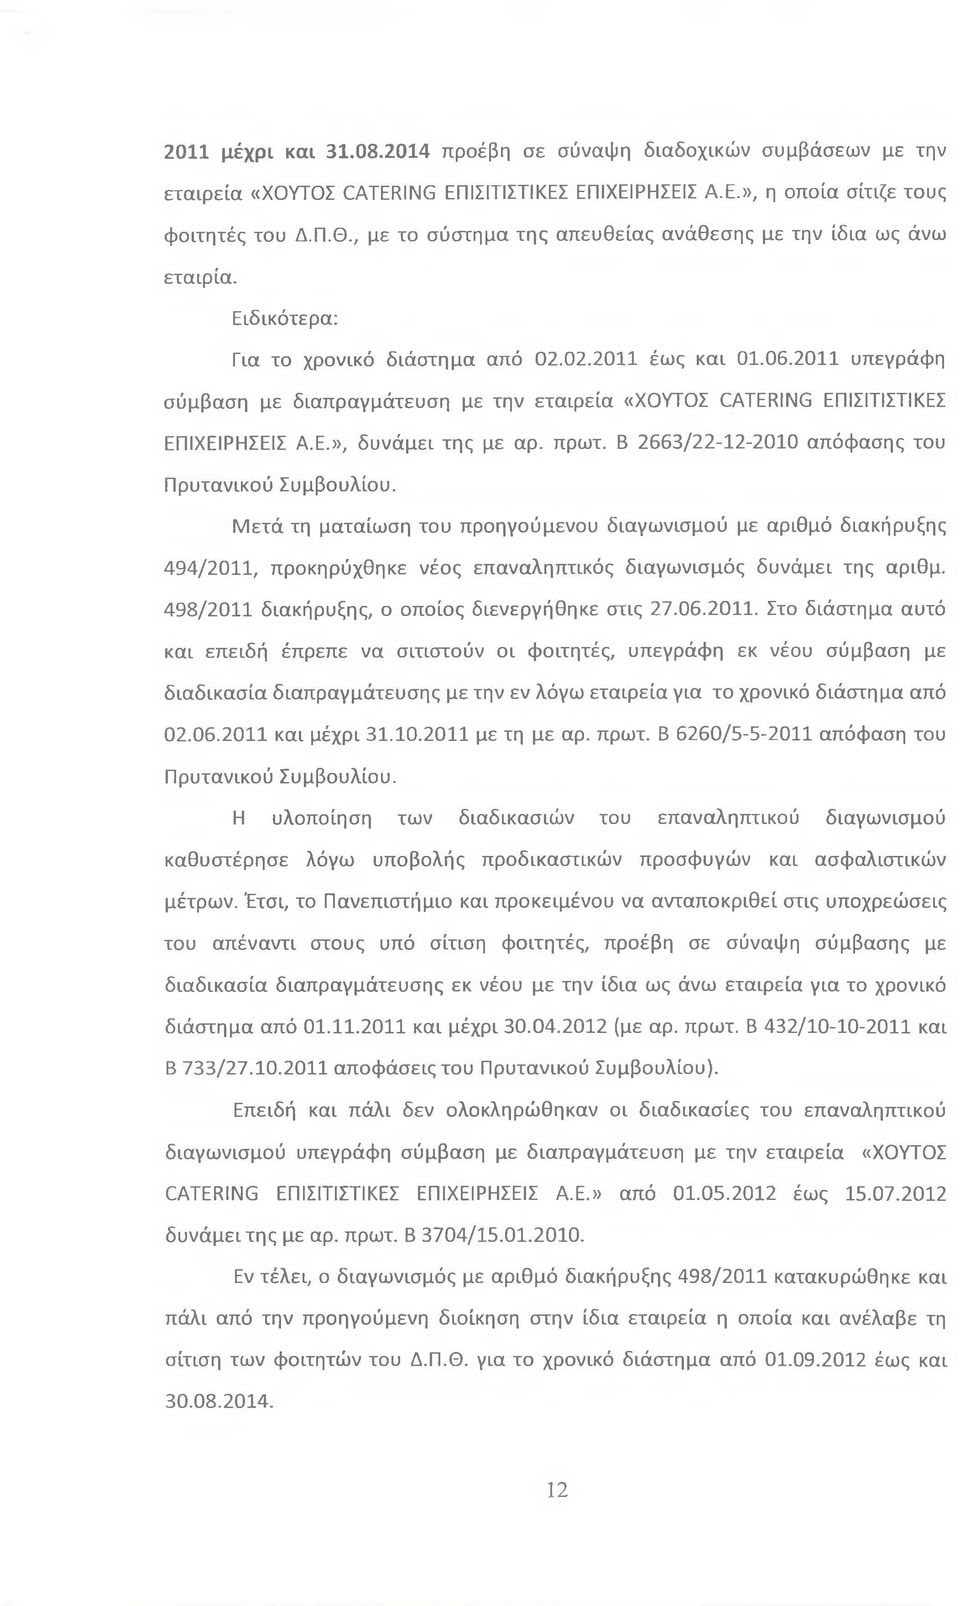 2011 υπεγράφη σύμβαση με διαπραγμάτευση με την εταιρεία «ΧΟΥΤΟΣ CATERING ΕΠΙΣΙΤΙΣΤΙΚΕΣ ΕΠΙΧΕΙΡΗΣΕΙΣ Α.Ε.», δυνάμει της με αρ. πρωτ. Β 2663/22-12-2010 απόφασης του Πρυτανικού Συμβουλίου.